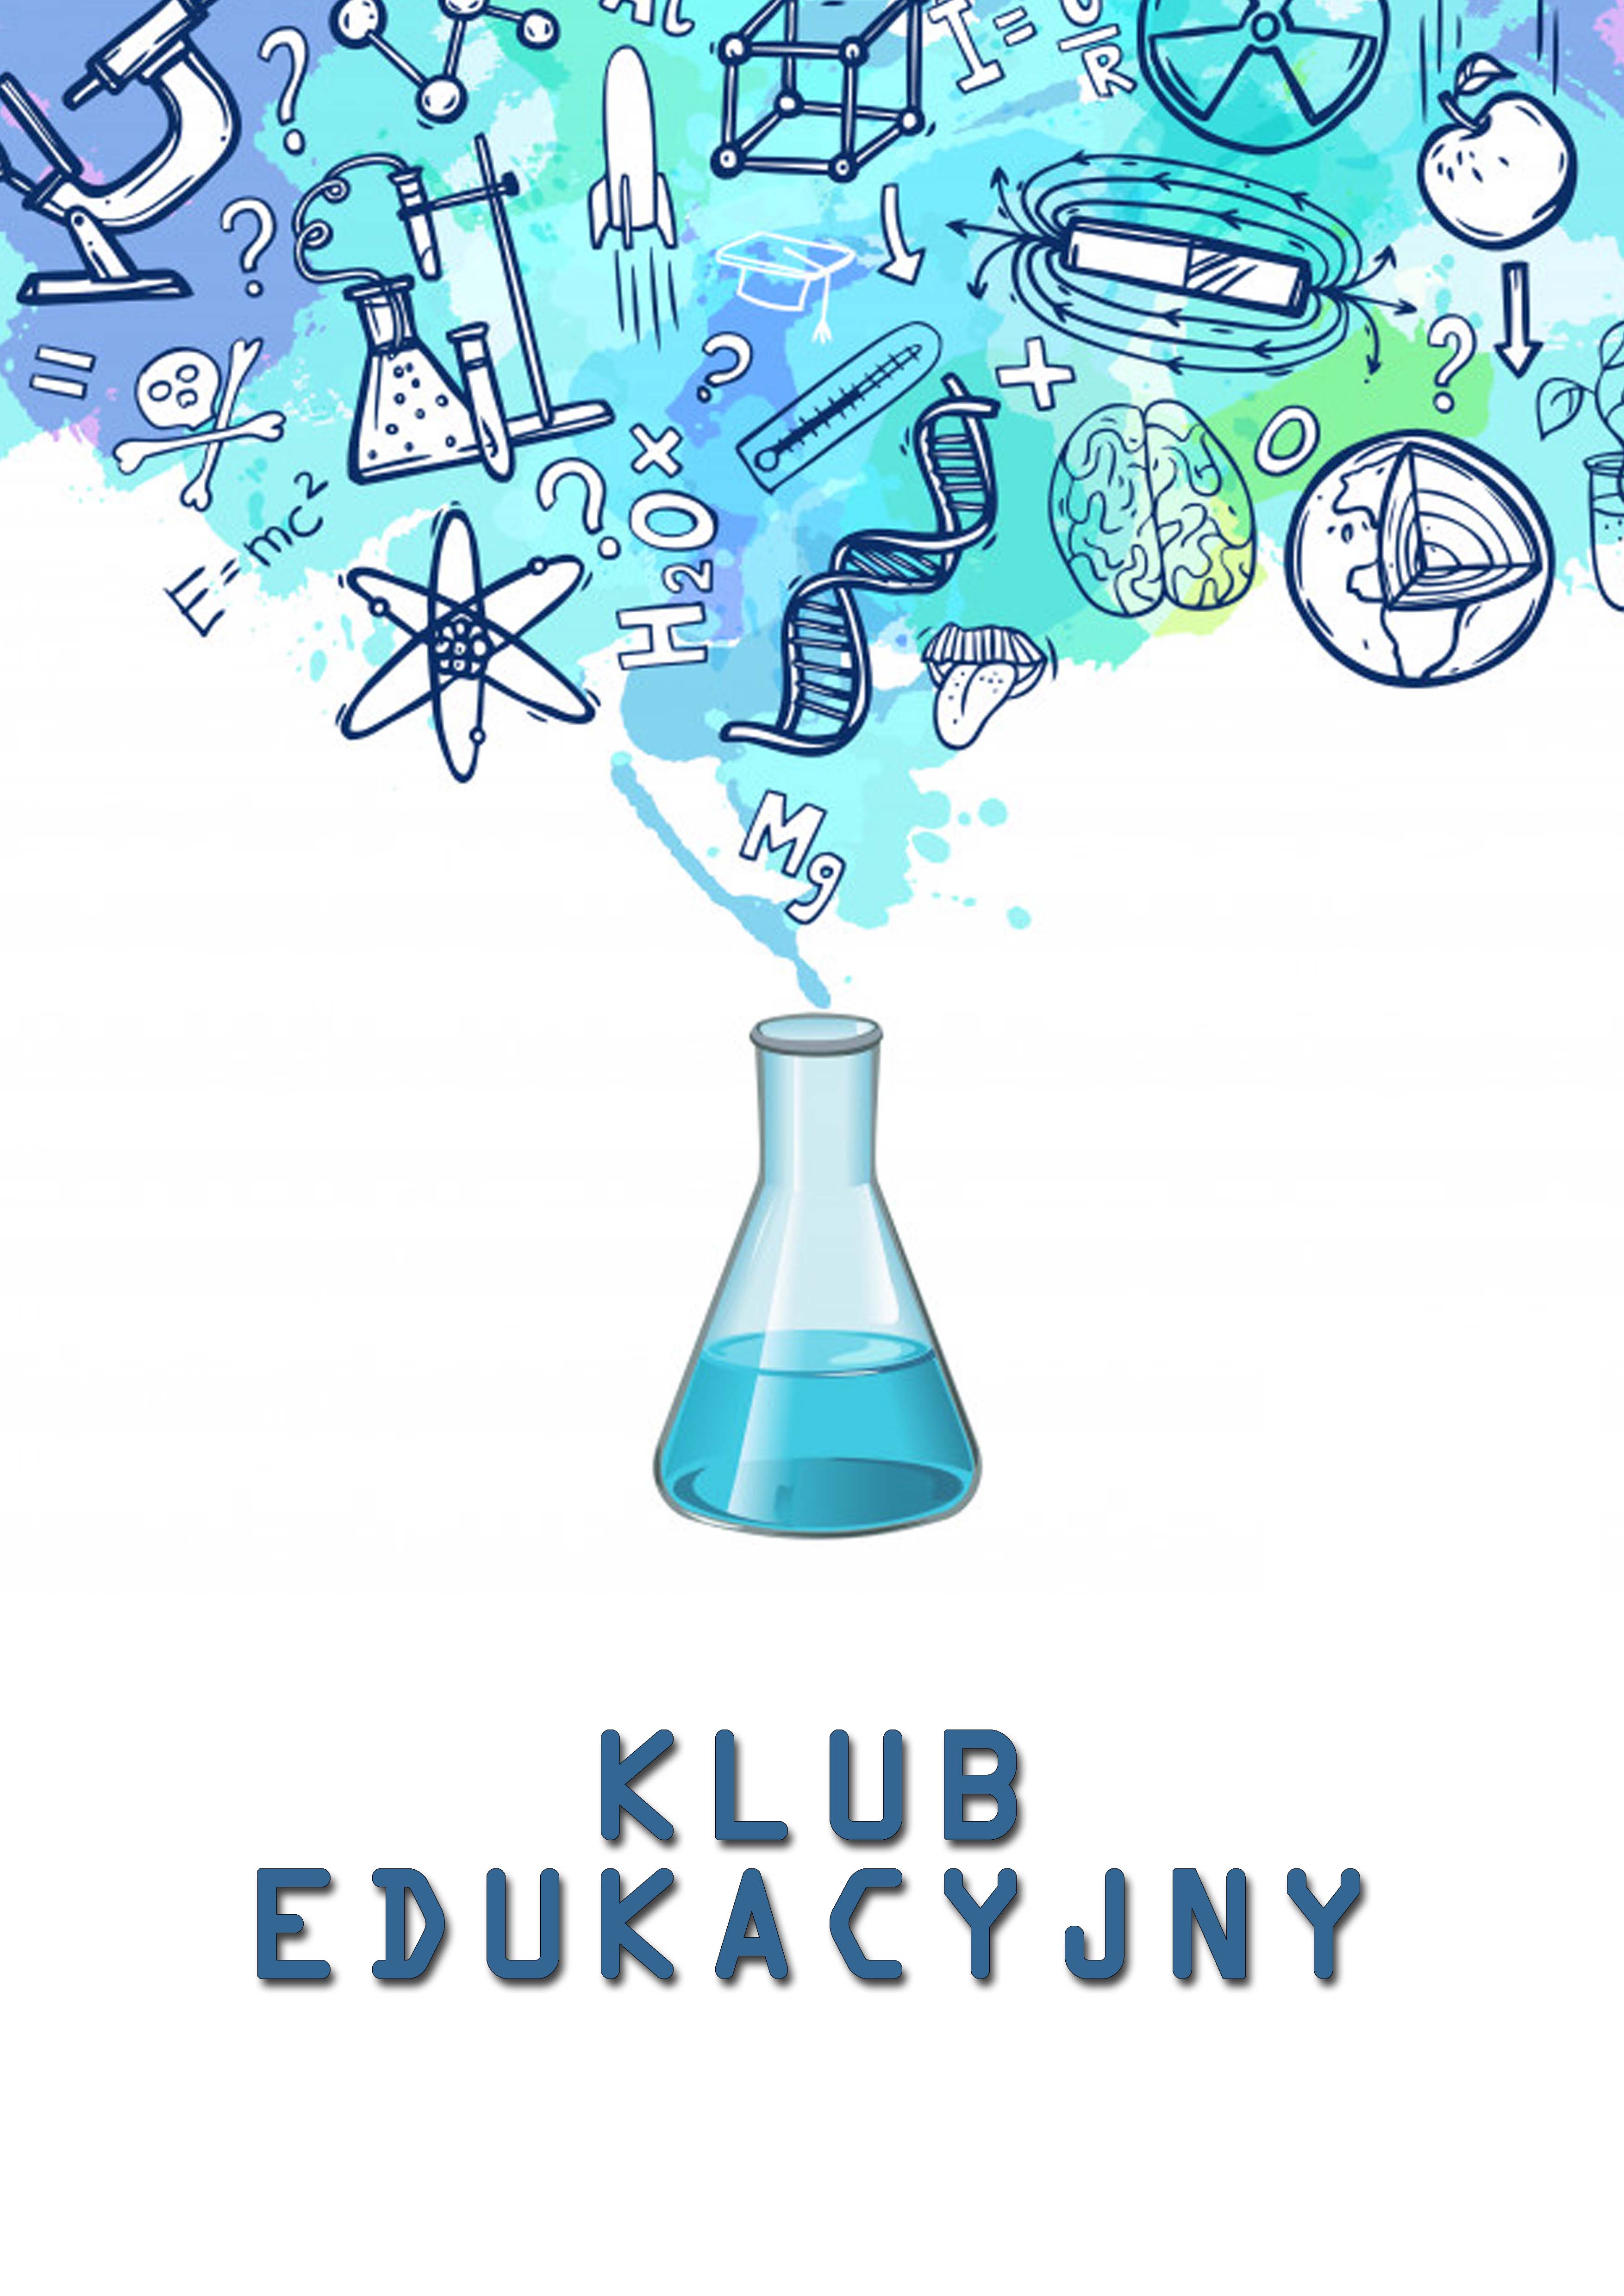 Grafika promująca warsztaty. Na środku naczynie laboratoryjne z którego wydobywają się symbole opisujące różne dziedziny nauki. Na dole tekst: "klub edukacyjny".  